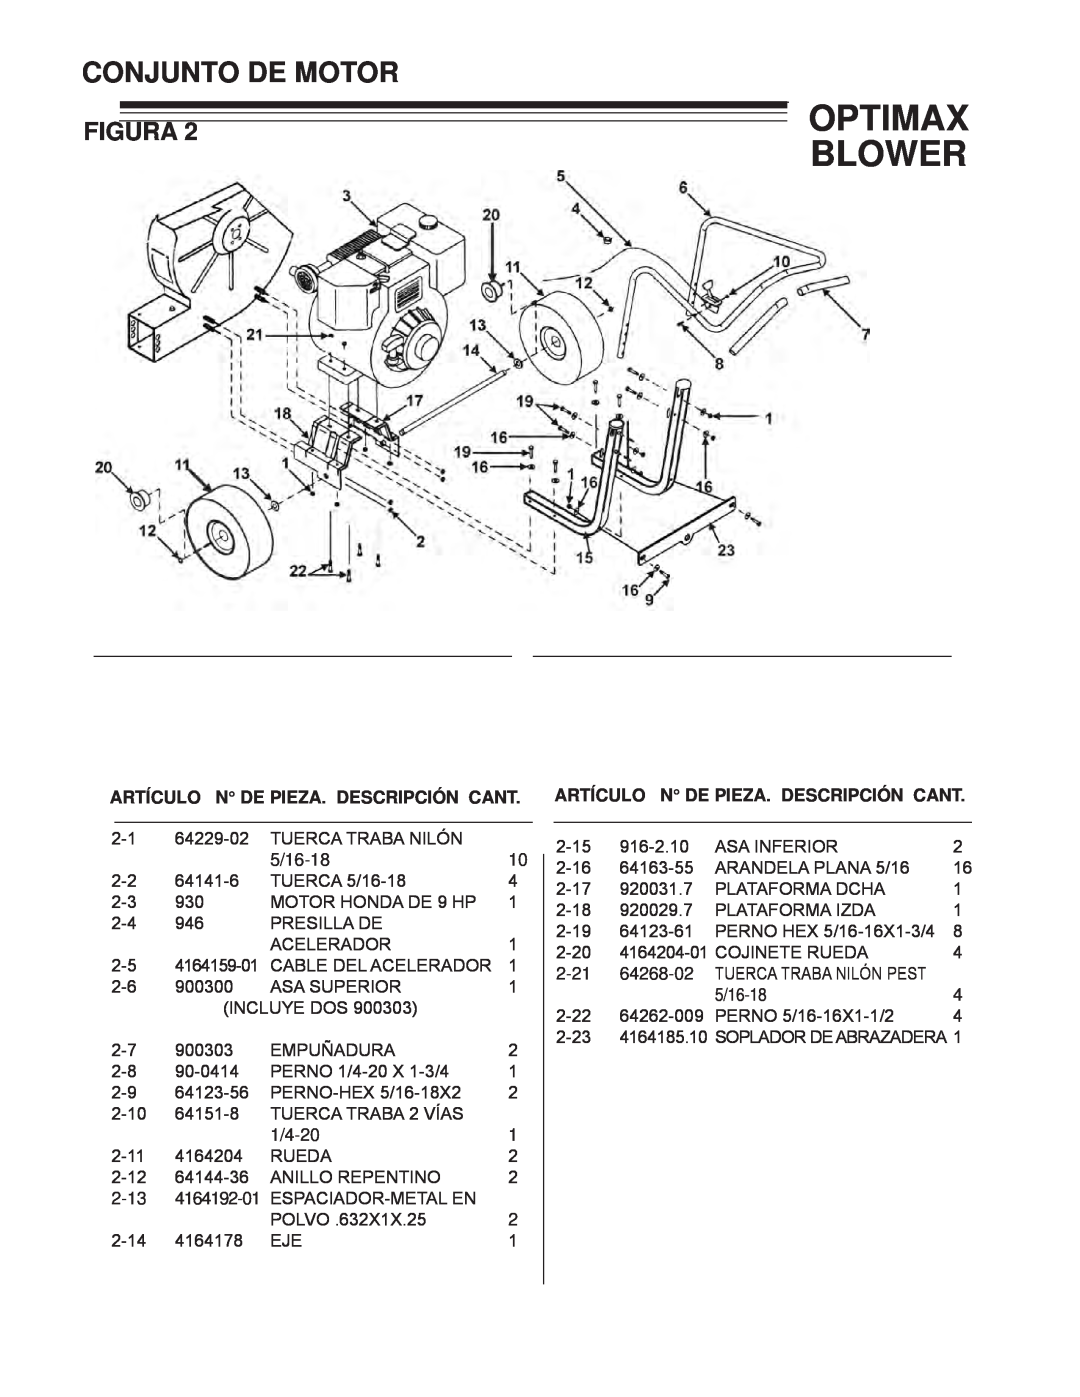 Little Wonder LB900-00-01 technical manual Conjunto De Motor, Optimax Blower, Figura, Artículo N De Pieza. Descripción Cant 